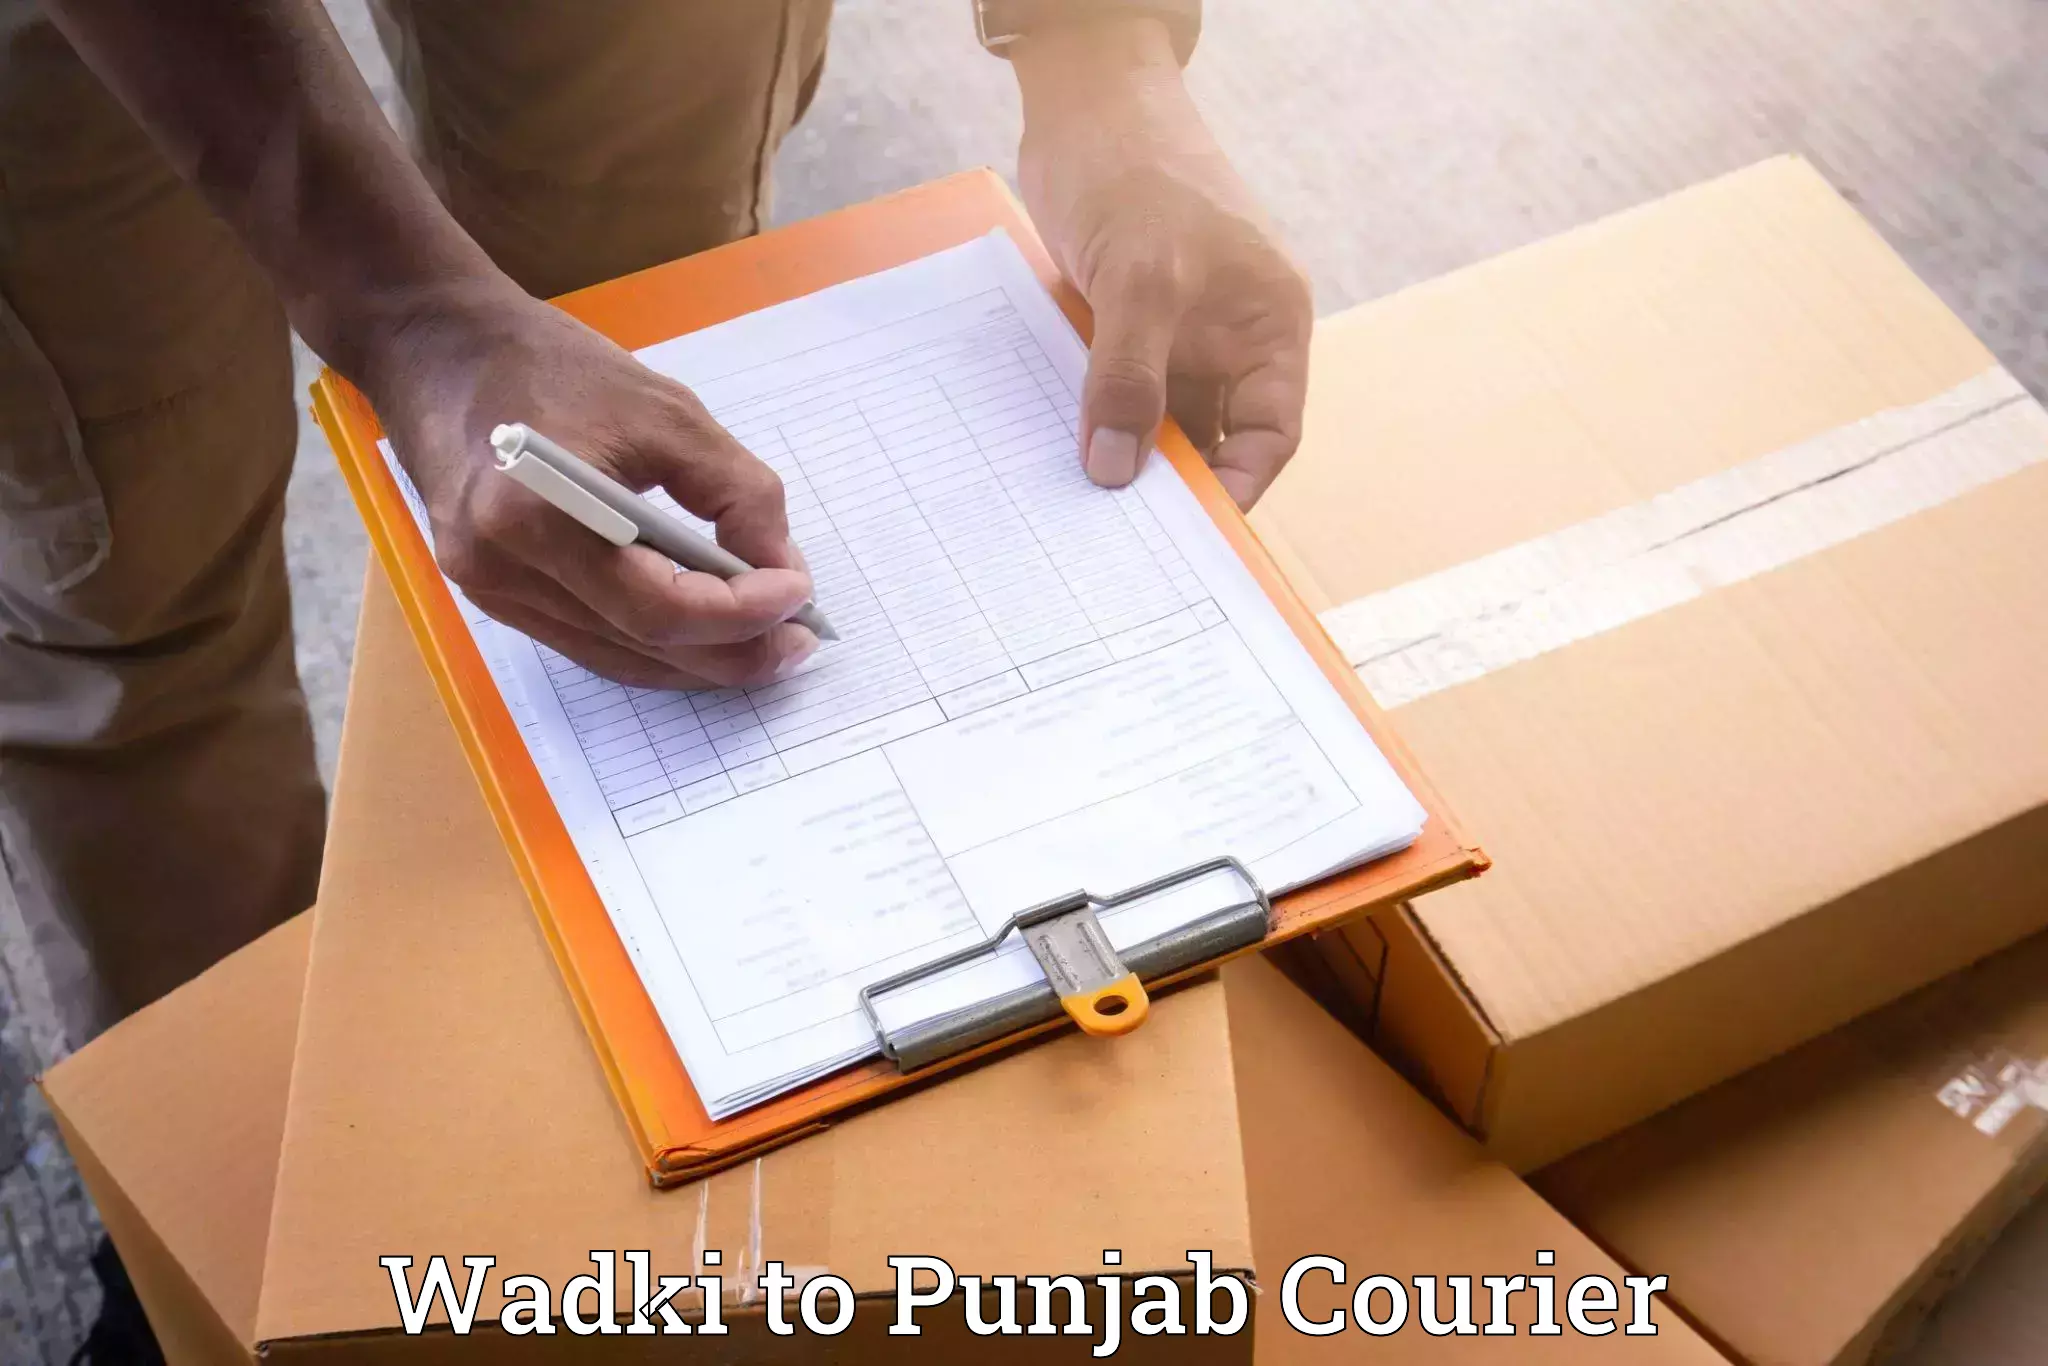 Efficient furniture movers Wadki to Punjab